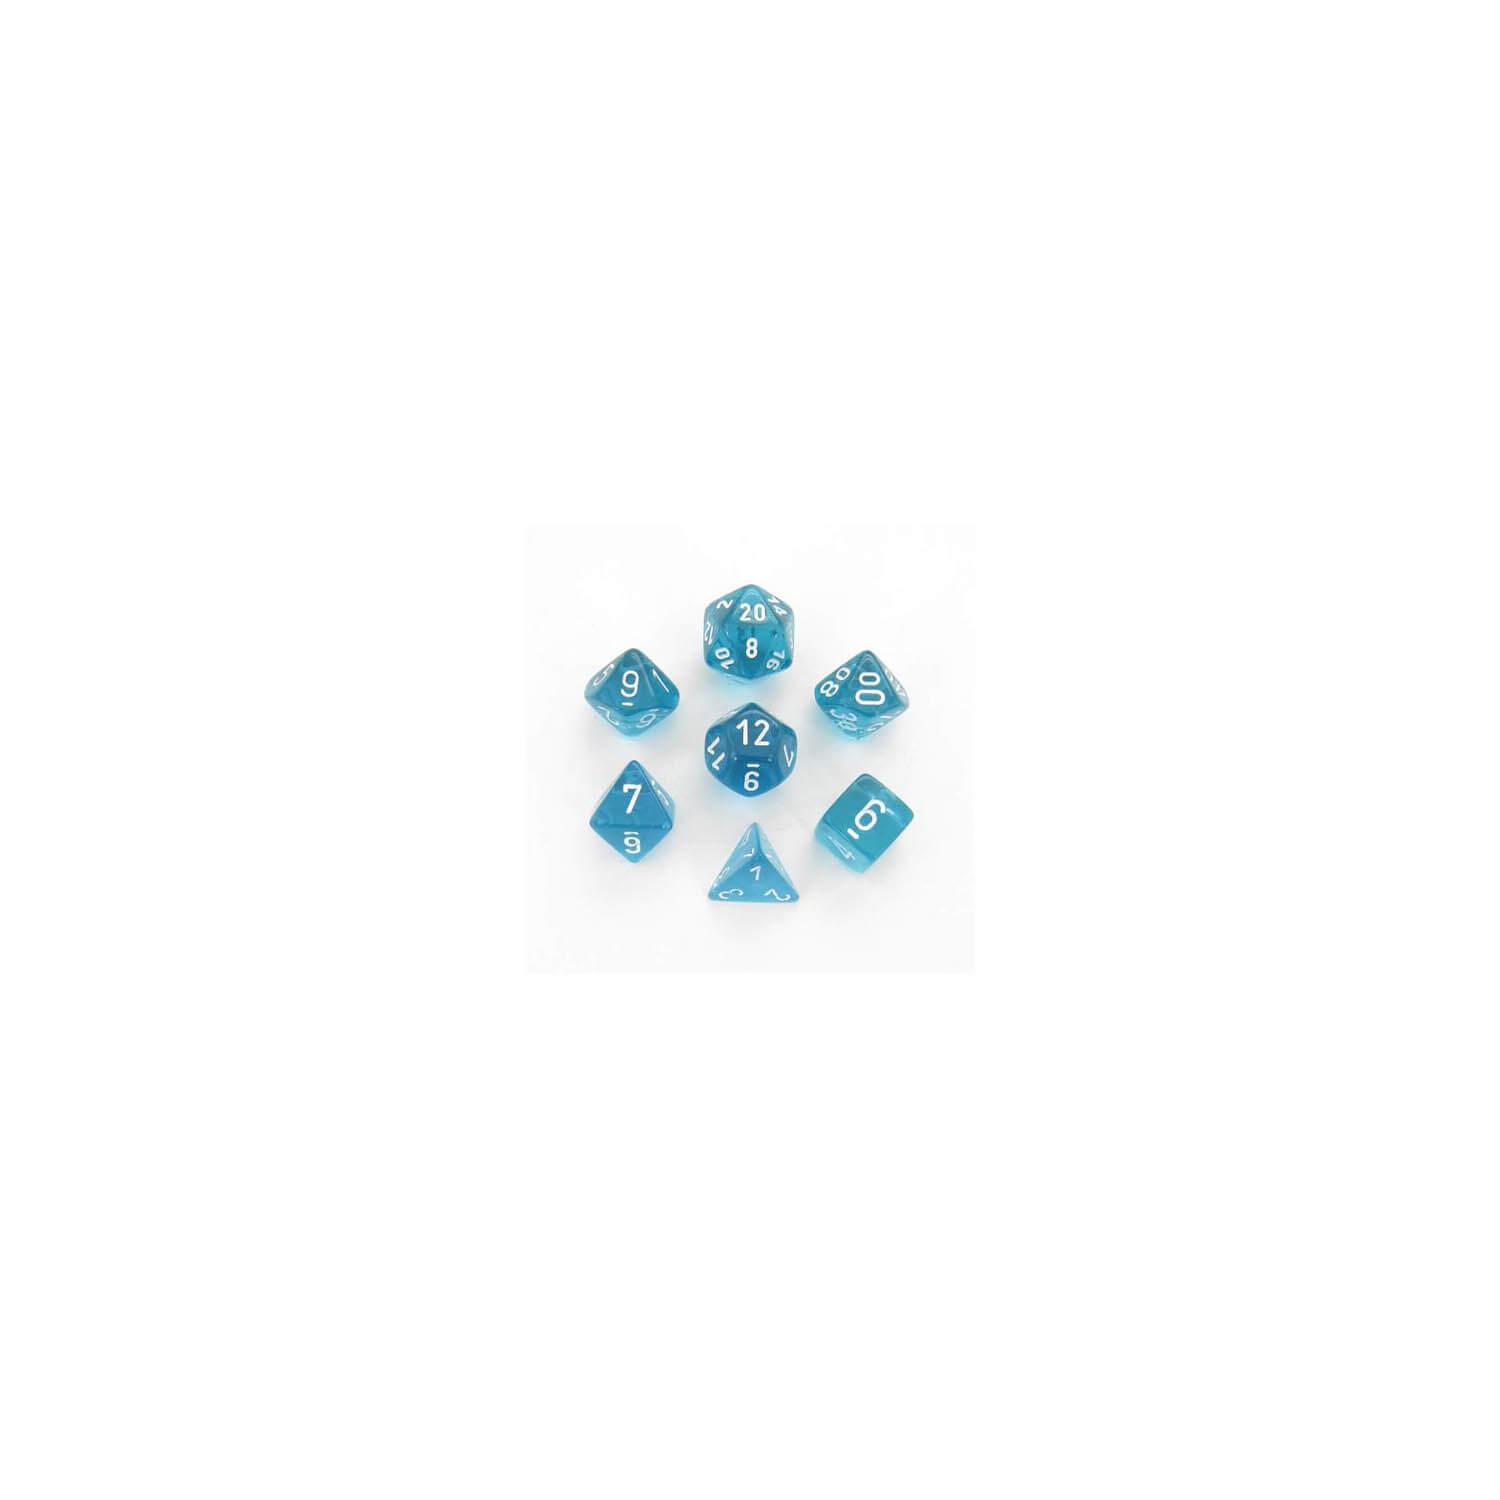 Translucent Teal: Polyhedral Set (7)